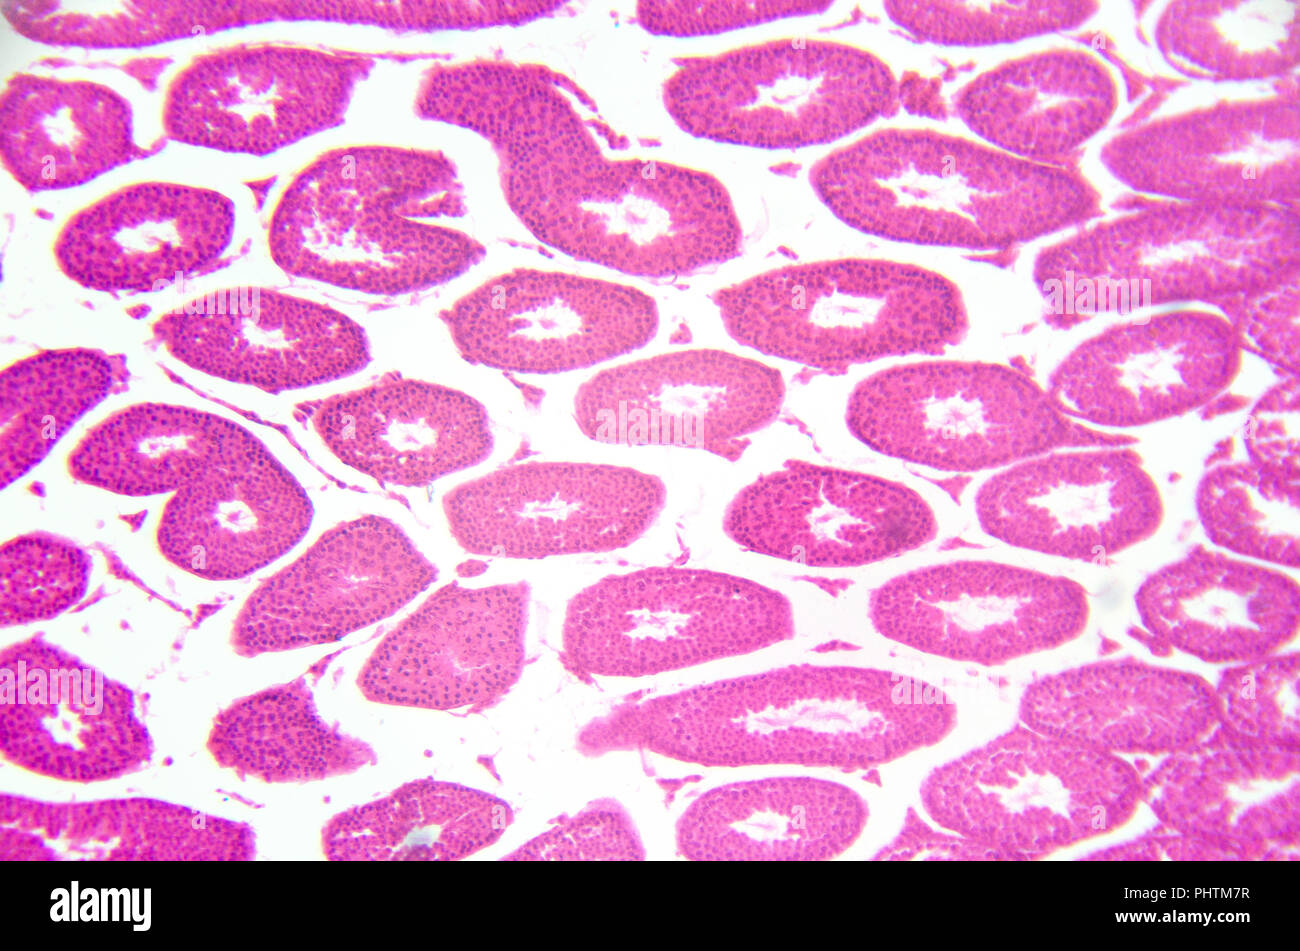 Photographie en microscopie électronique. Les testicules, tubes séminifères, section transversale. Banque D'Images